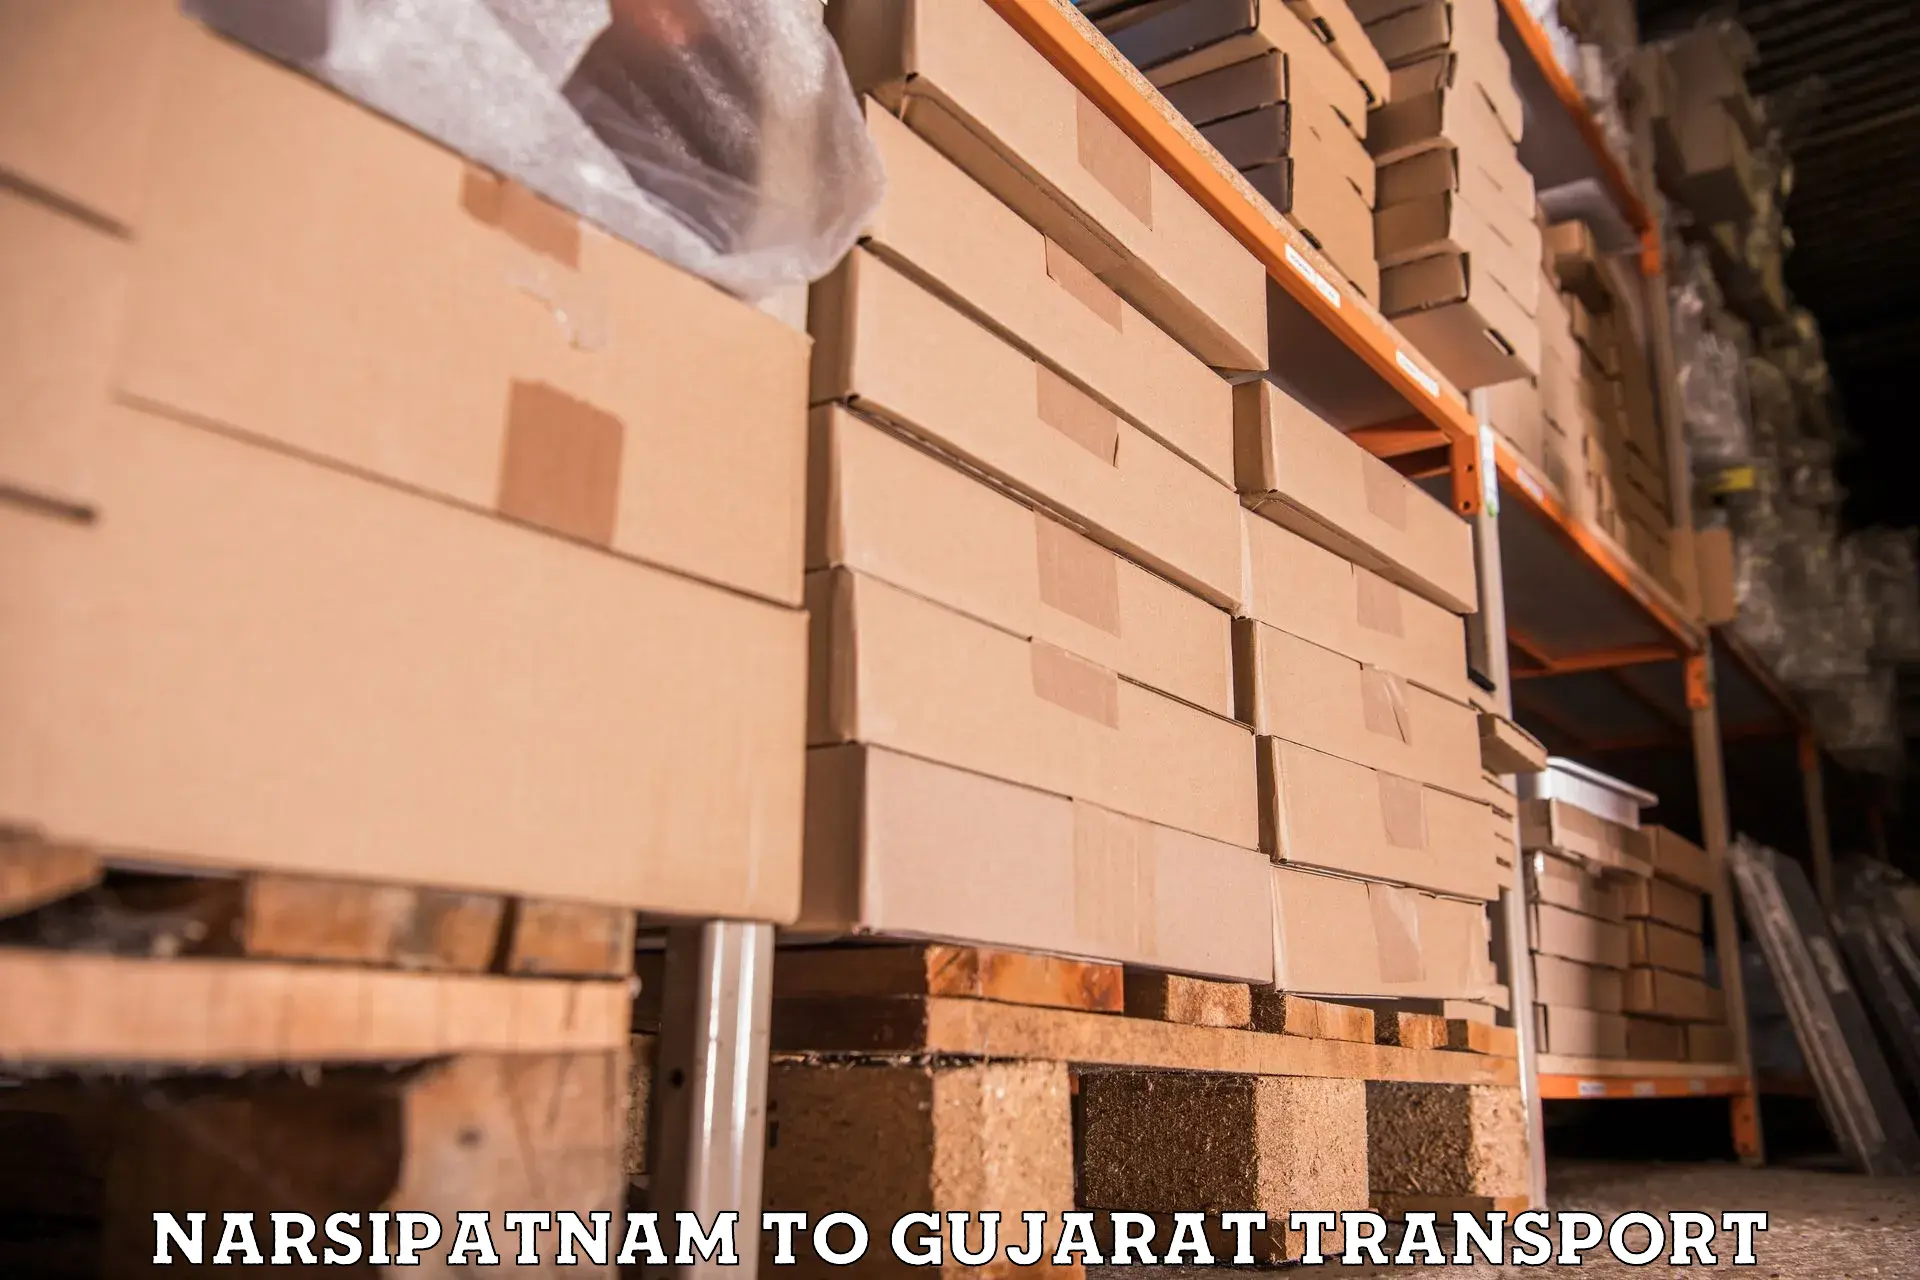 Bike shipping service Narsipatnam to Surat